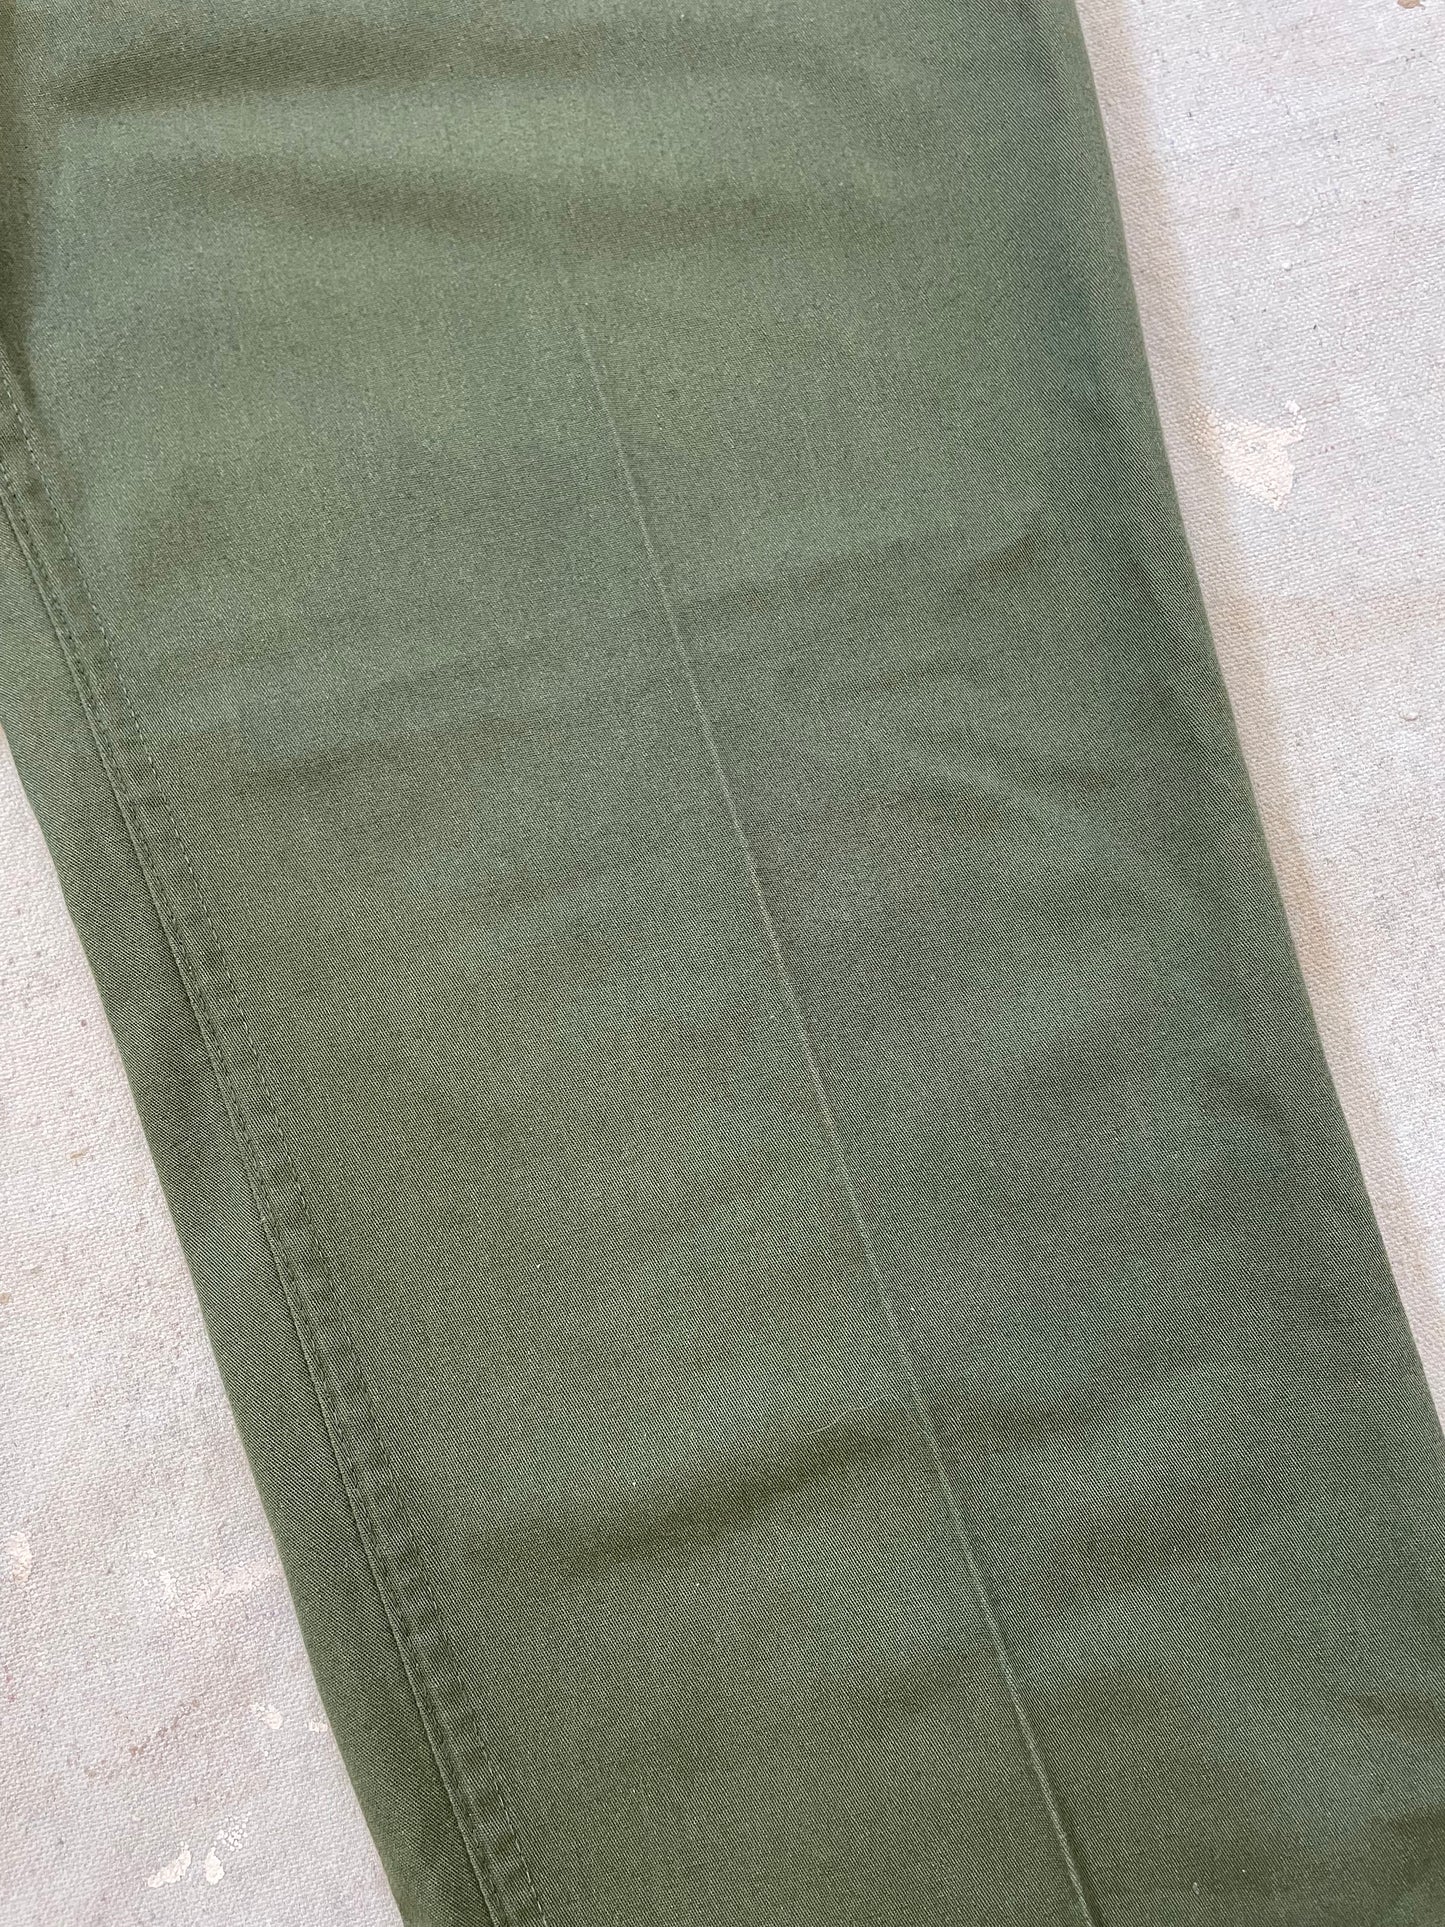 70s OG-507 Army Pants